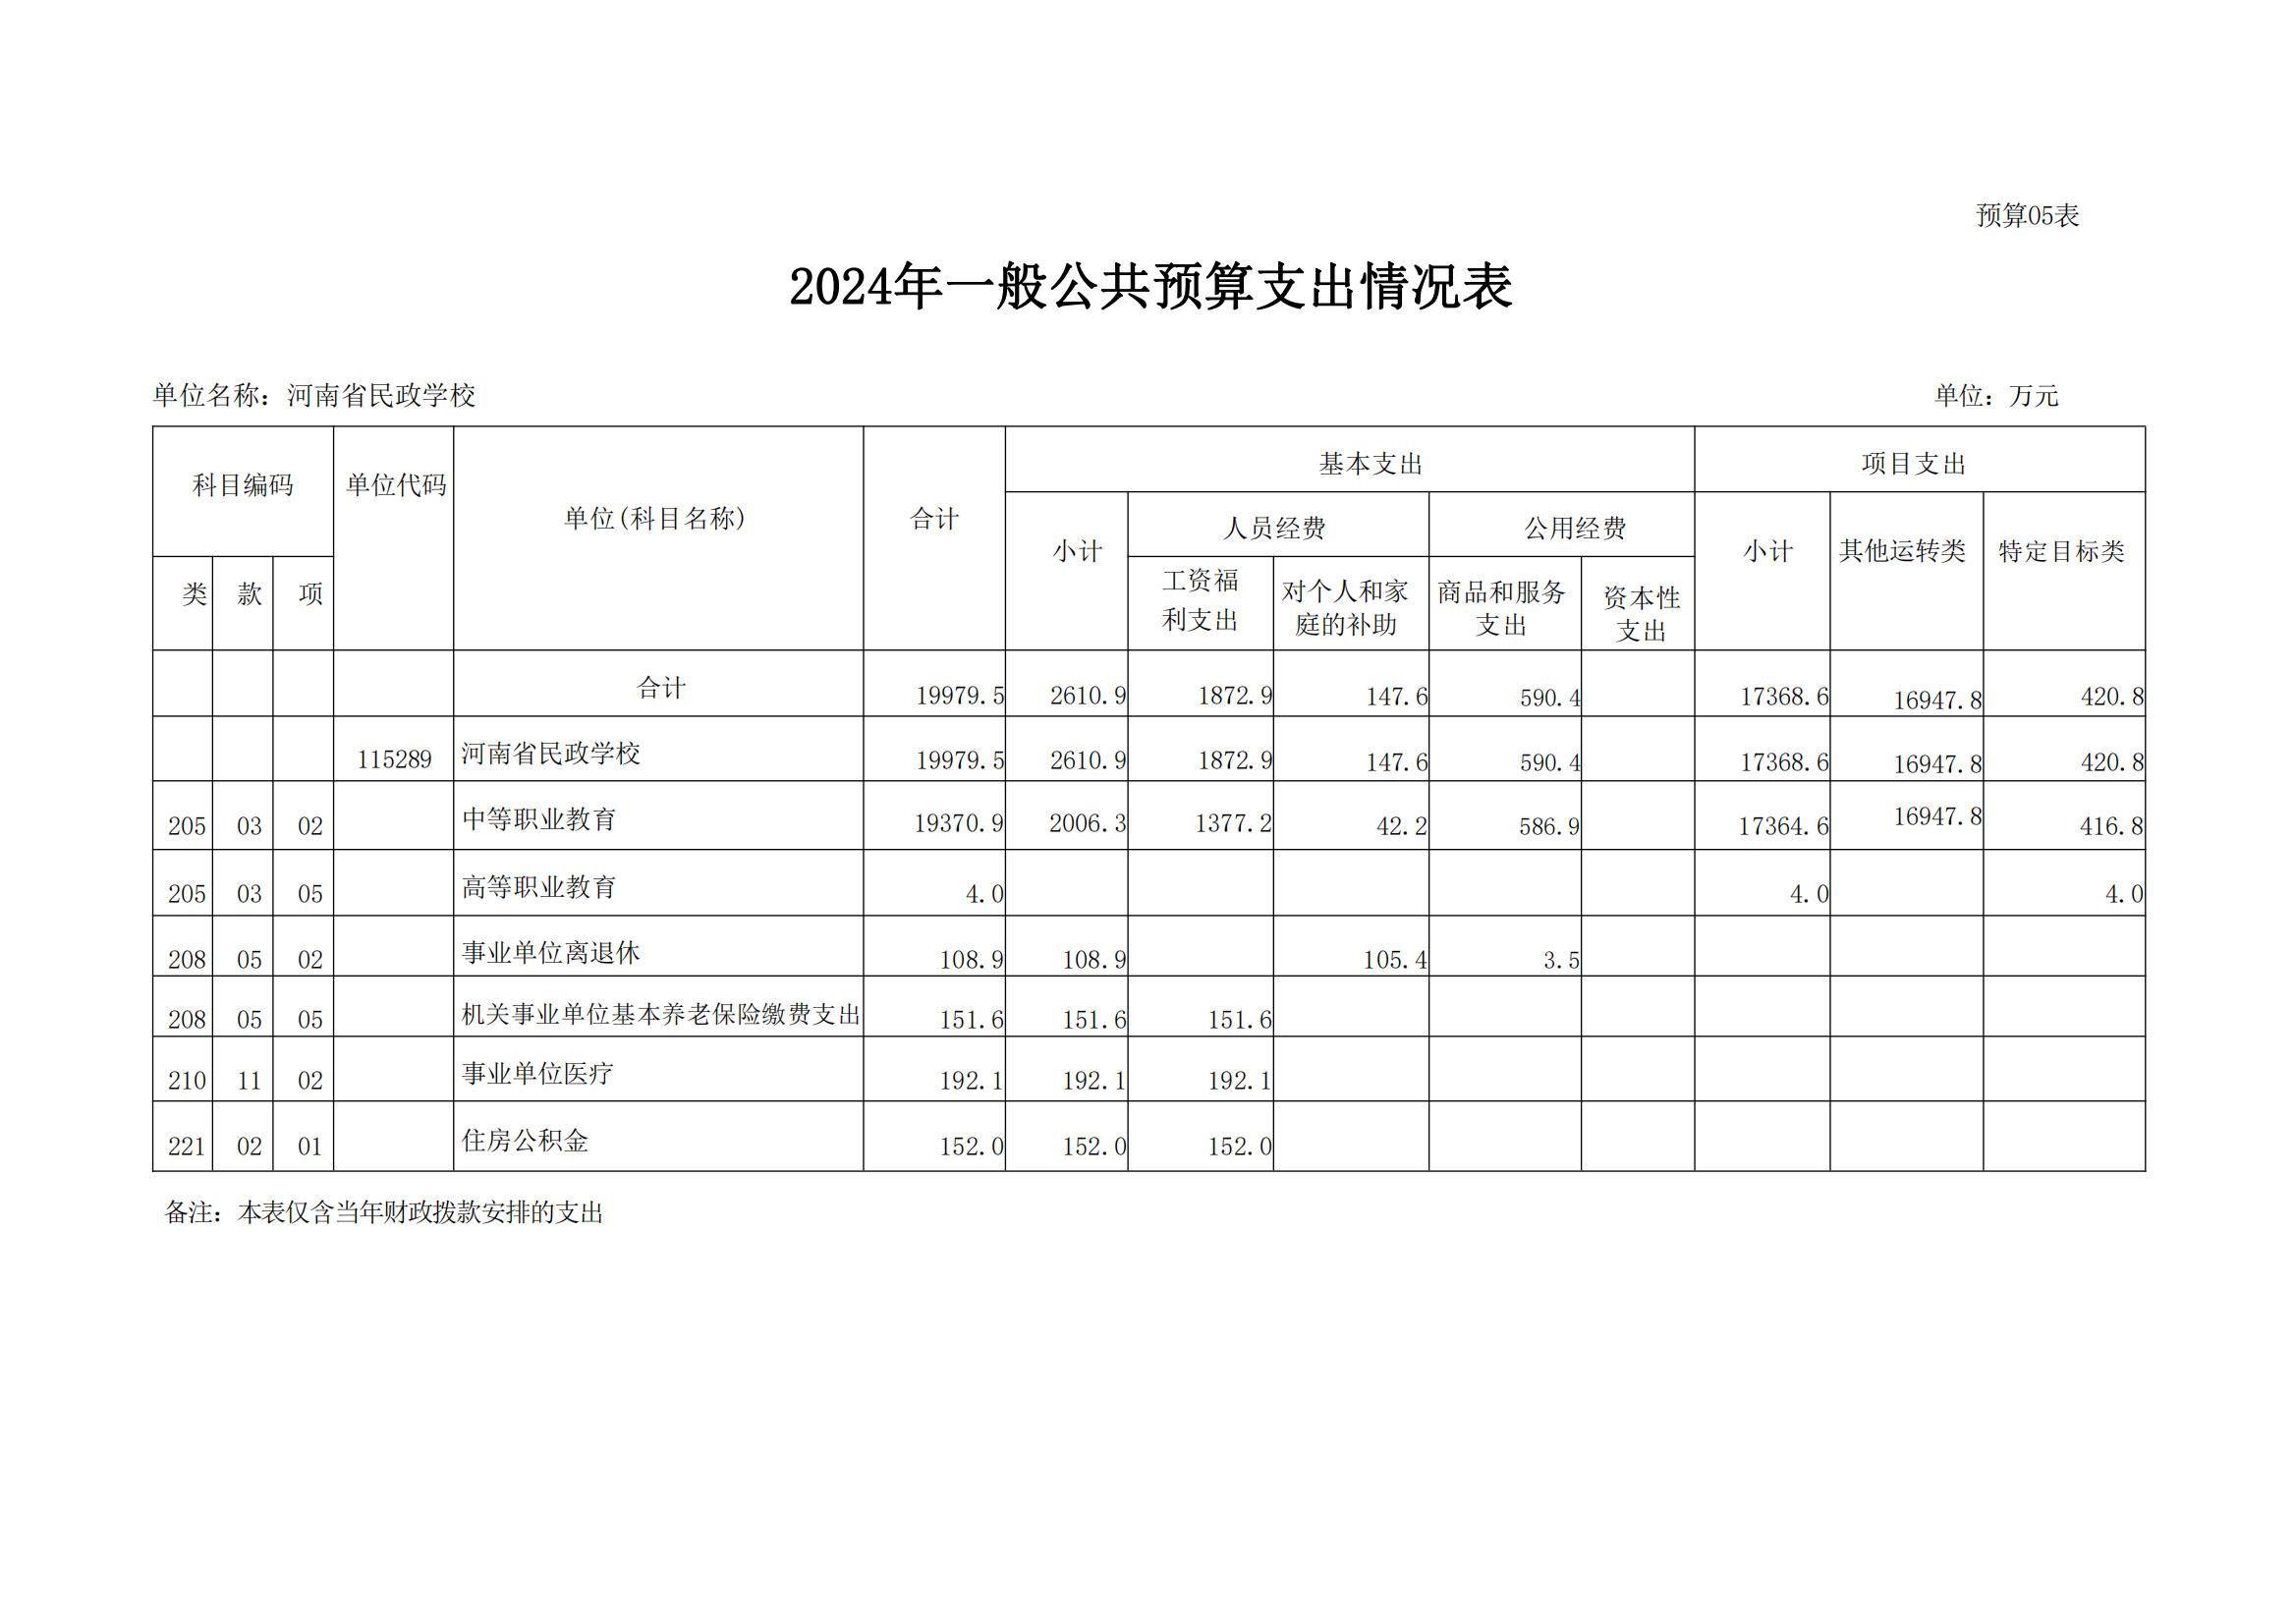 河南省民政学校2024年部门预算公开(1)_13.jpg